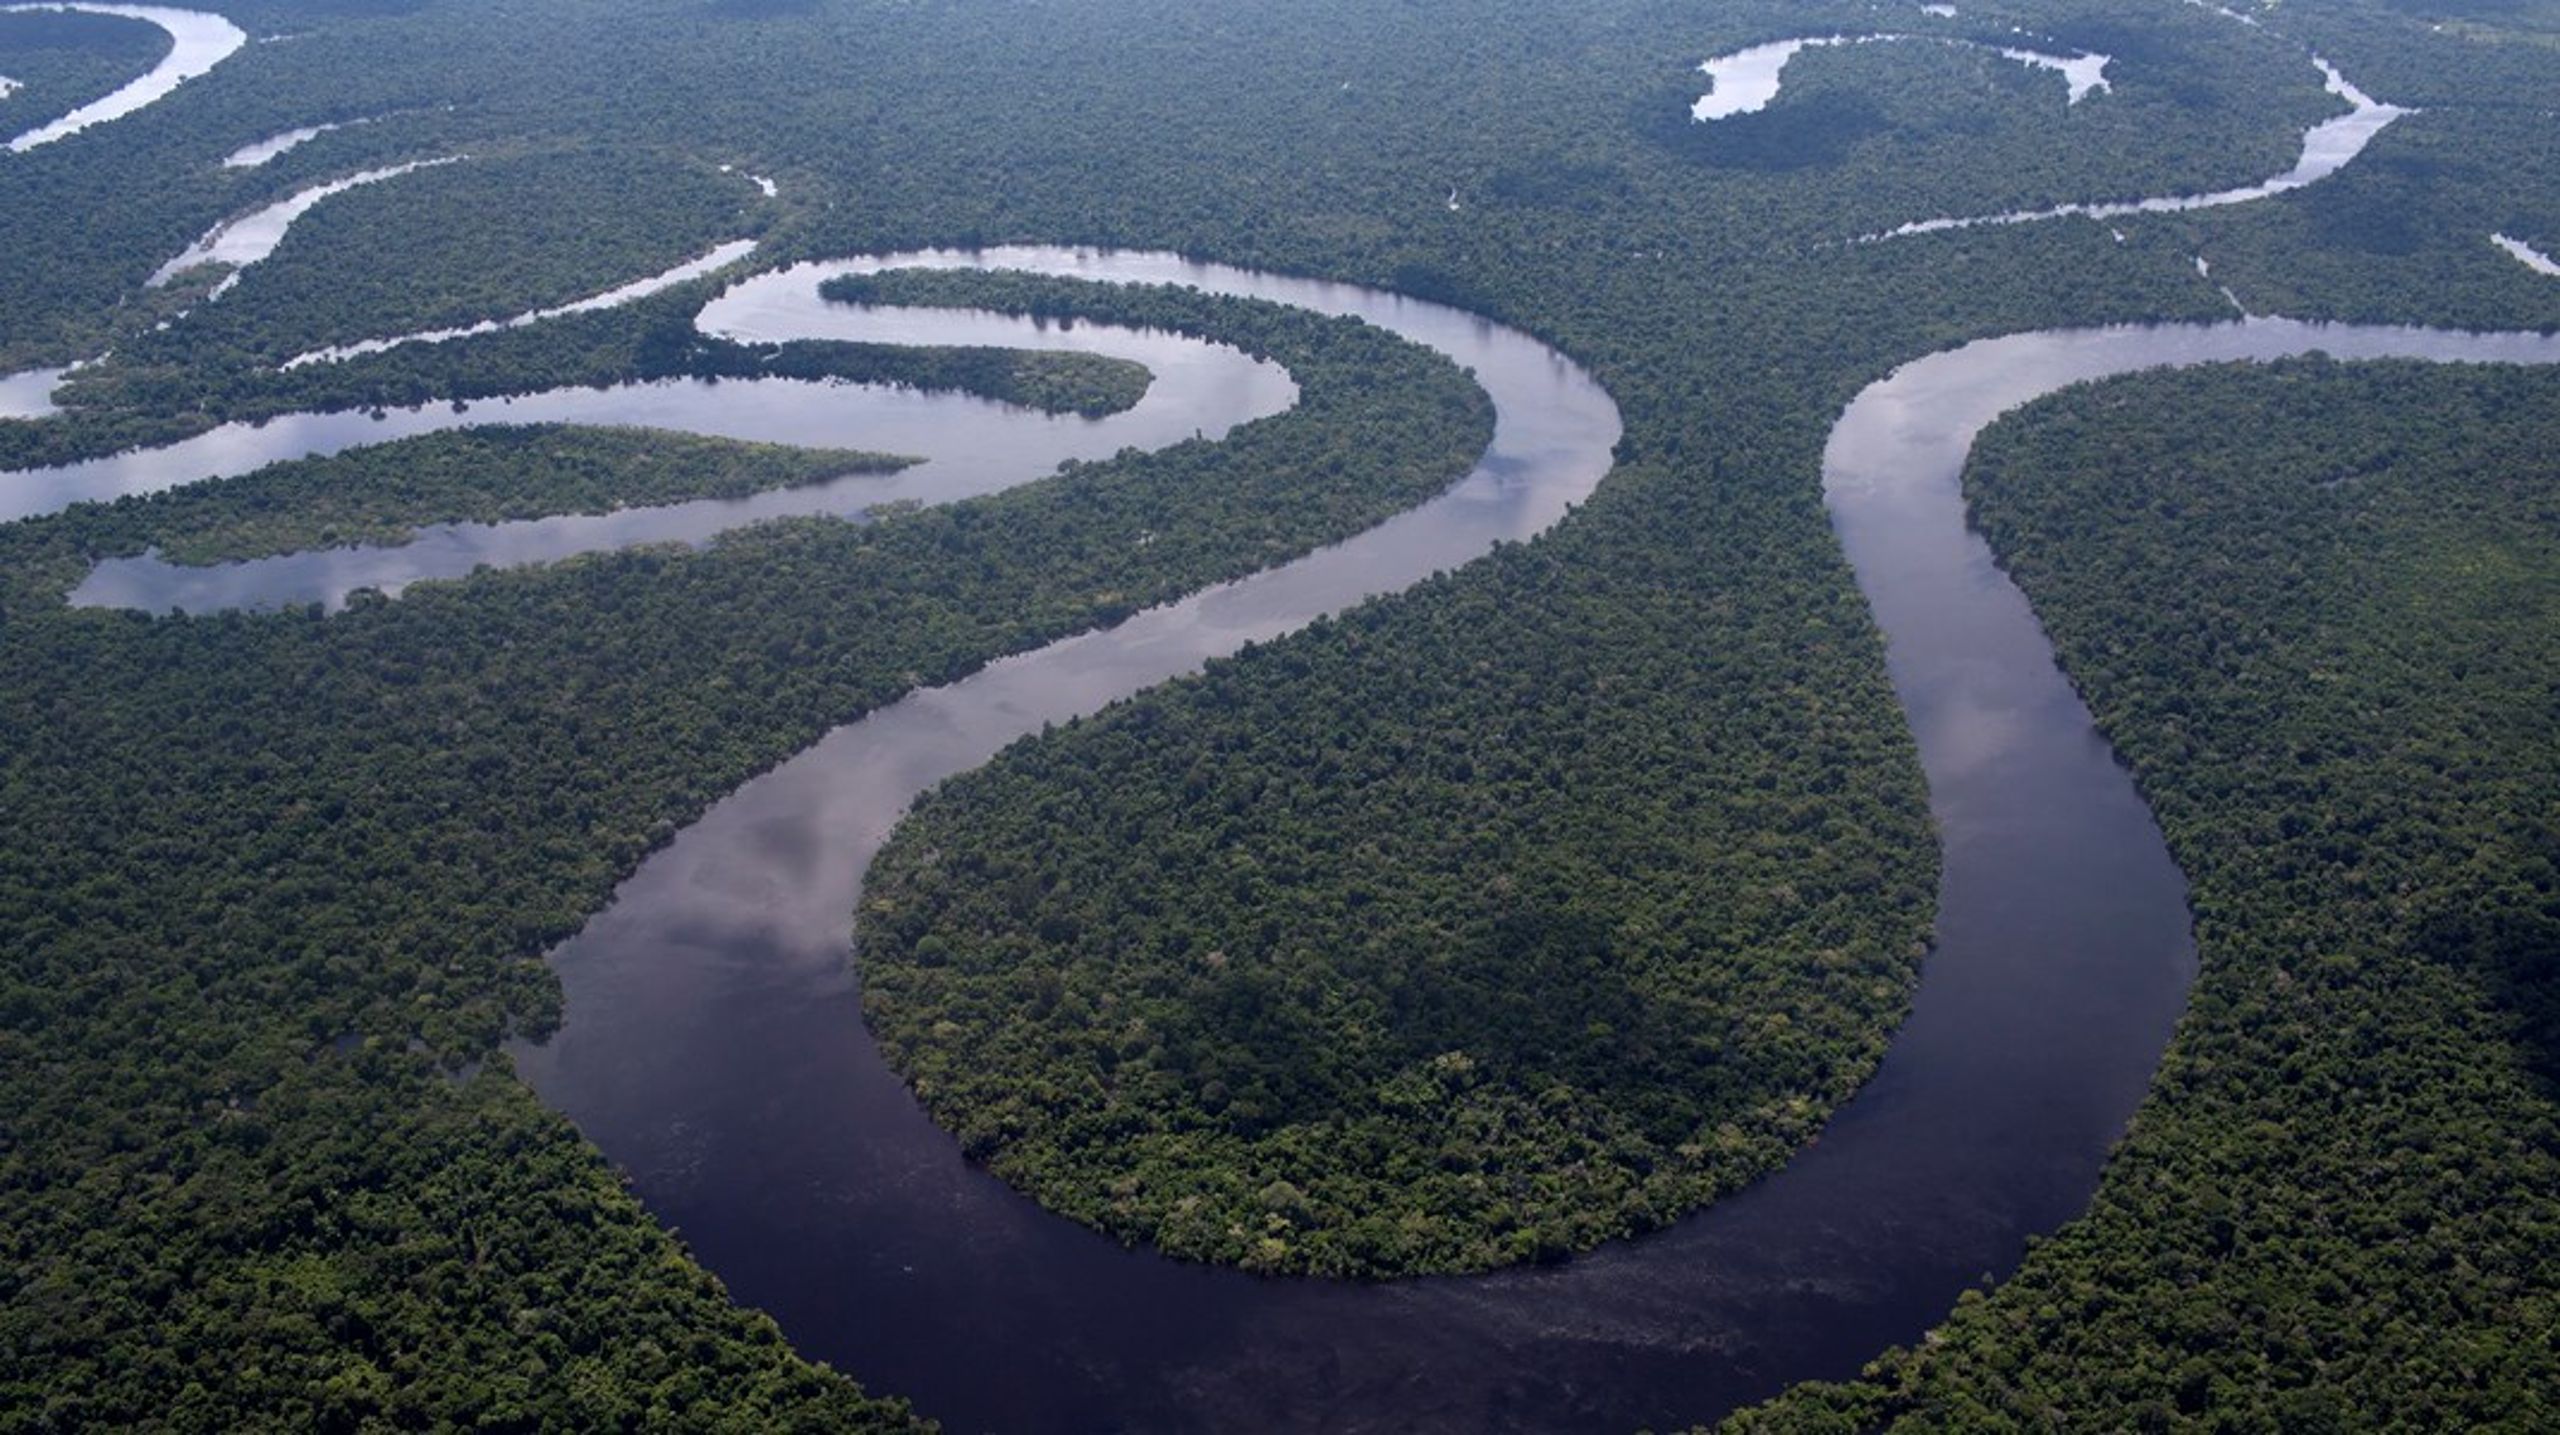 Inte ens Amazonas djungel är lika snårig som miljötillståndens utredningsdjungel. Det anser åtminstone debattörerna.